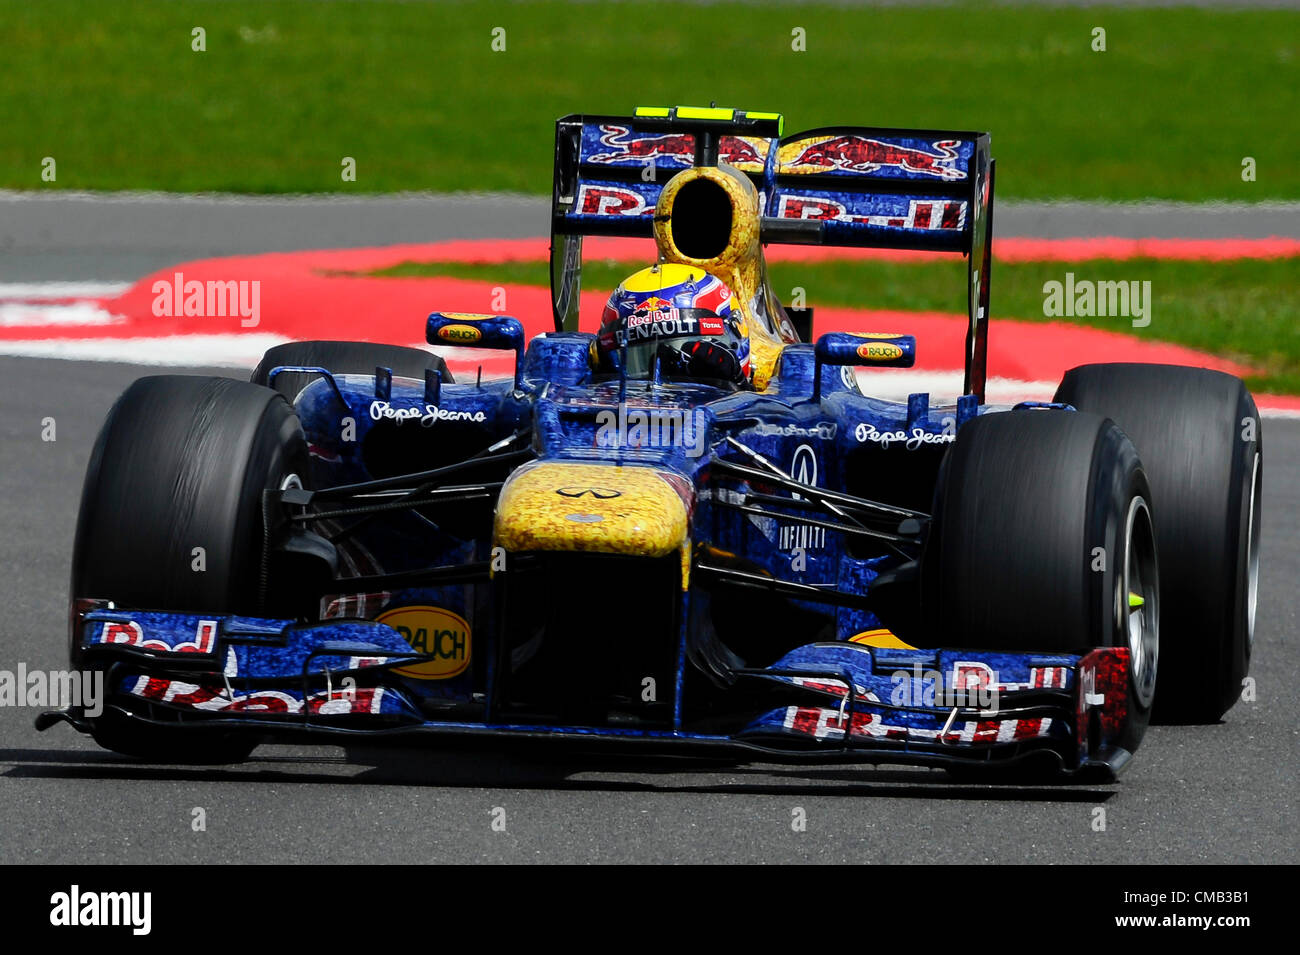 08.07.2012 Towcester, England. Mark Webber aus Australien und Red Bull Racing in Aktion während des Rennens beim britischen Grand Prix Santander, Runde 9 der 2012 FIA Formel 1 Weltmeisterschaft in Silverstone. Stockfoto